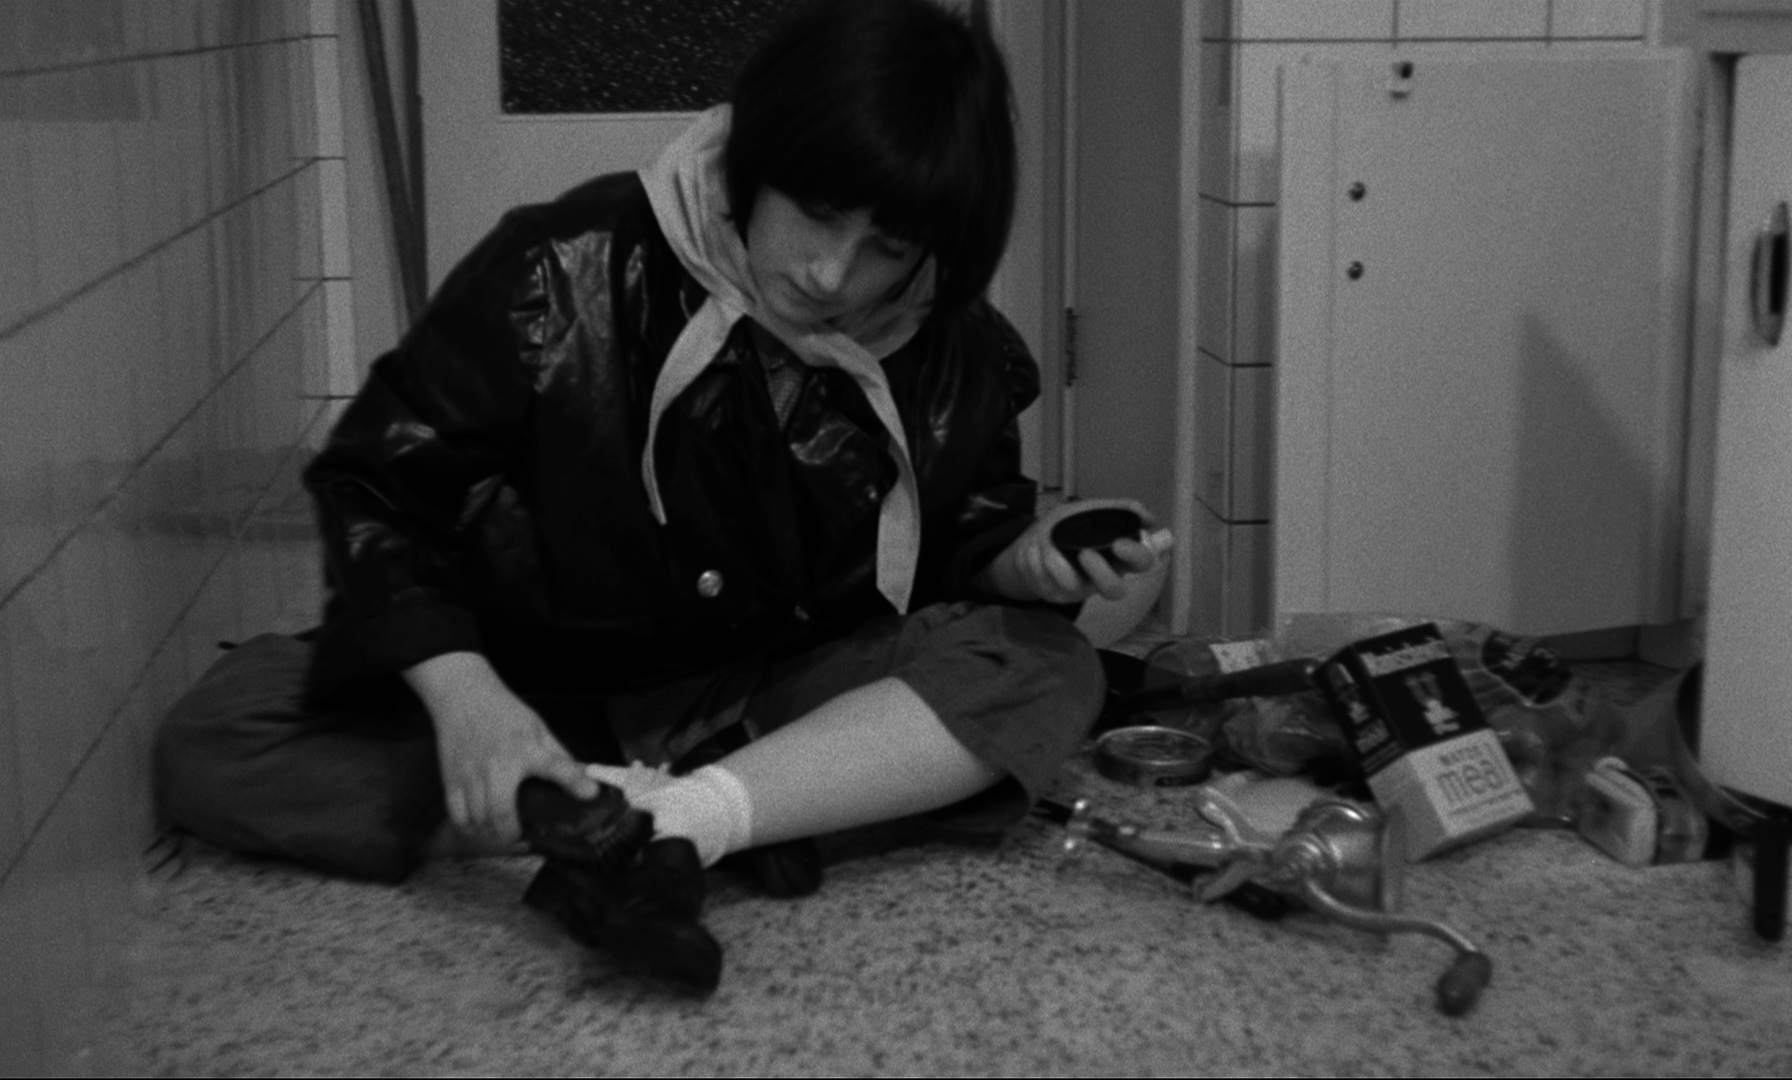 (1) Saute ma ville (Chantal Akerman, 1968)